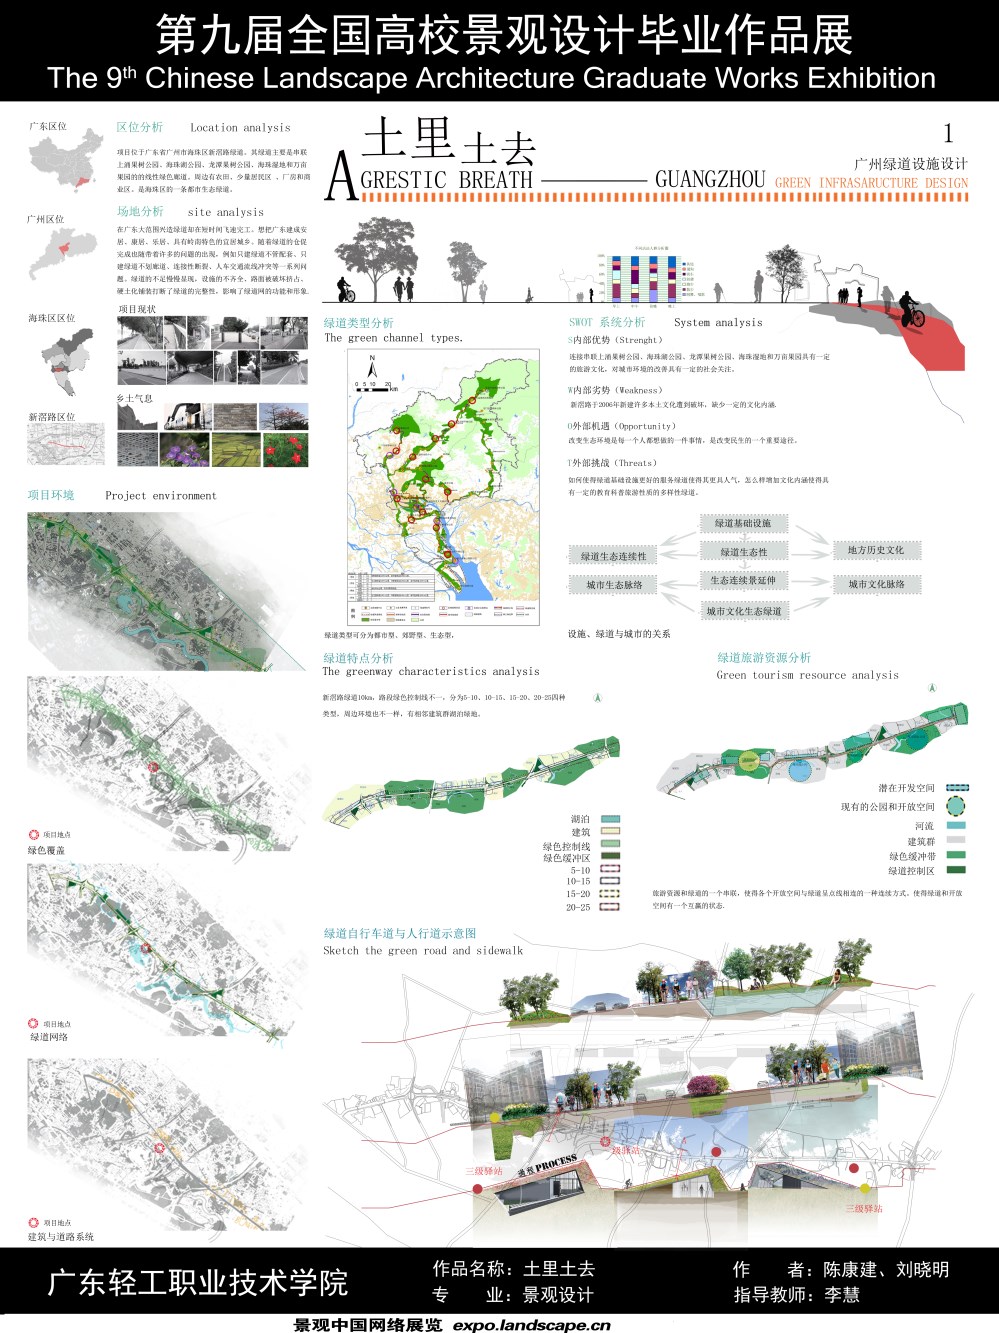 土里土去——广州城市绿道新滘路段景观设施设计-1